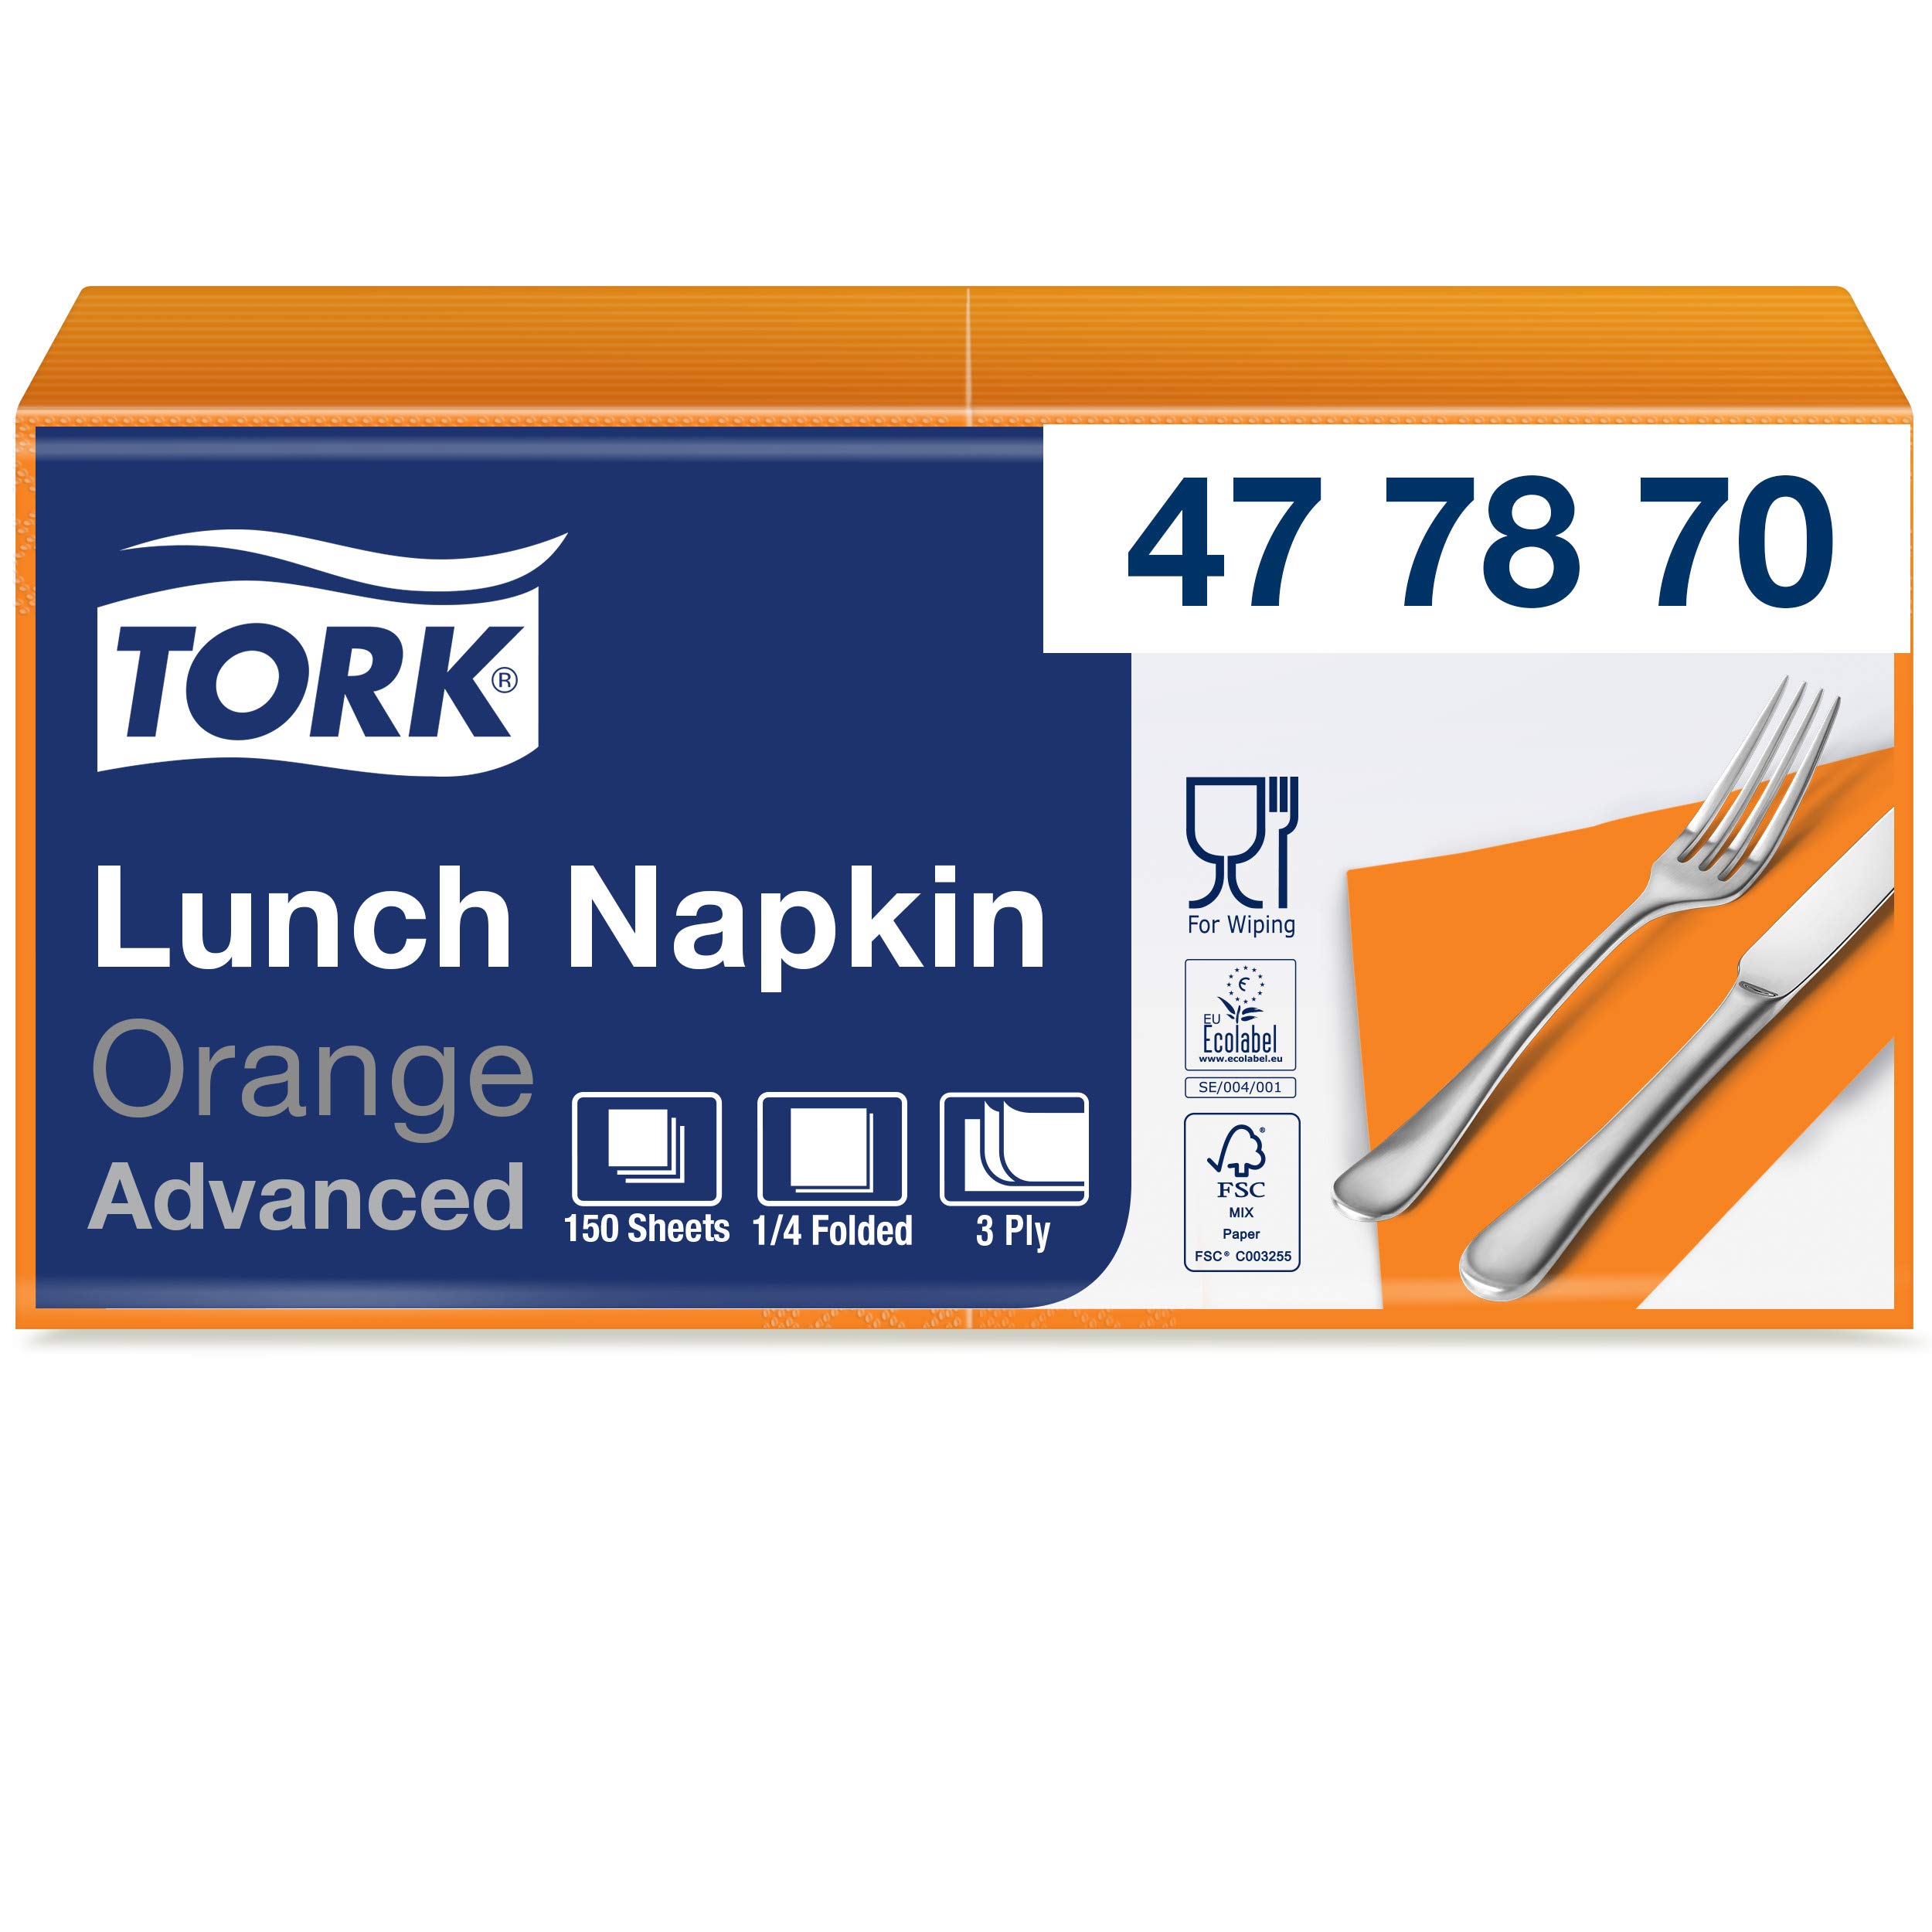 Tork 477870 Soft Lunchservietten Orange / 3lagige, saugfähige Papierservietten in Orange / Vielfältig verwendbar / Advanced Qualität / 10 x 150 (1500) Servietten / 32,6 x 33 cm (B x L) / 1/4-Falz